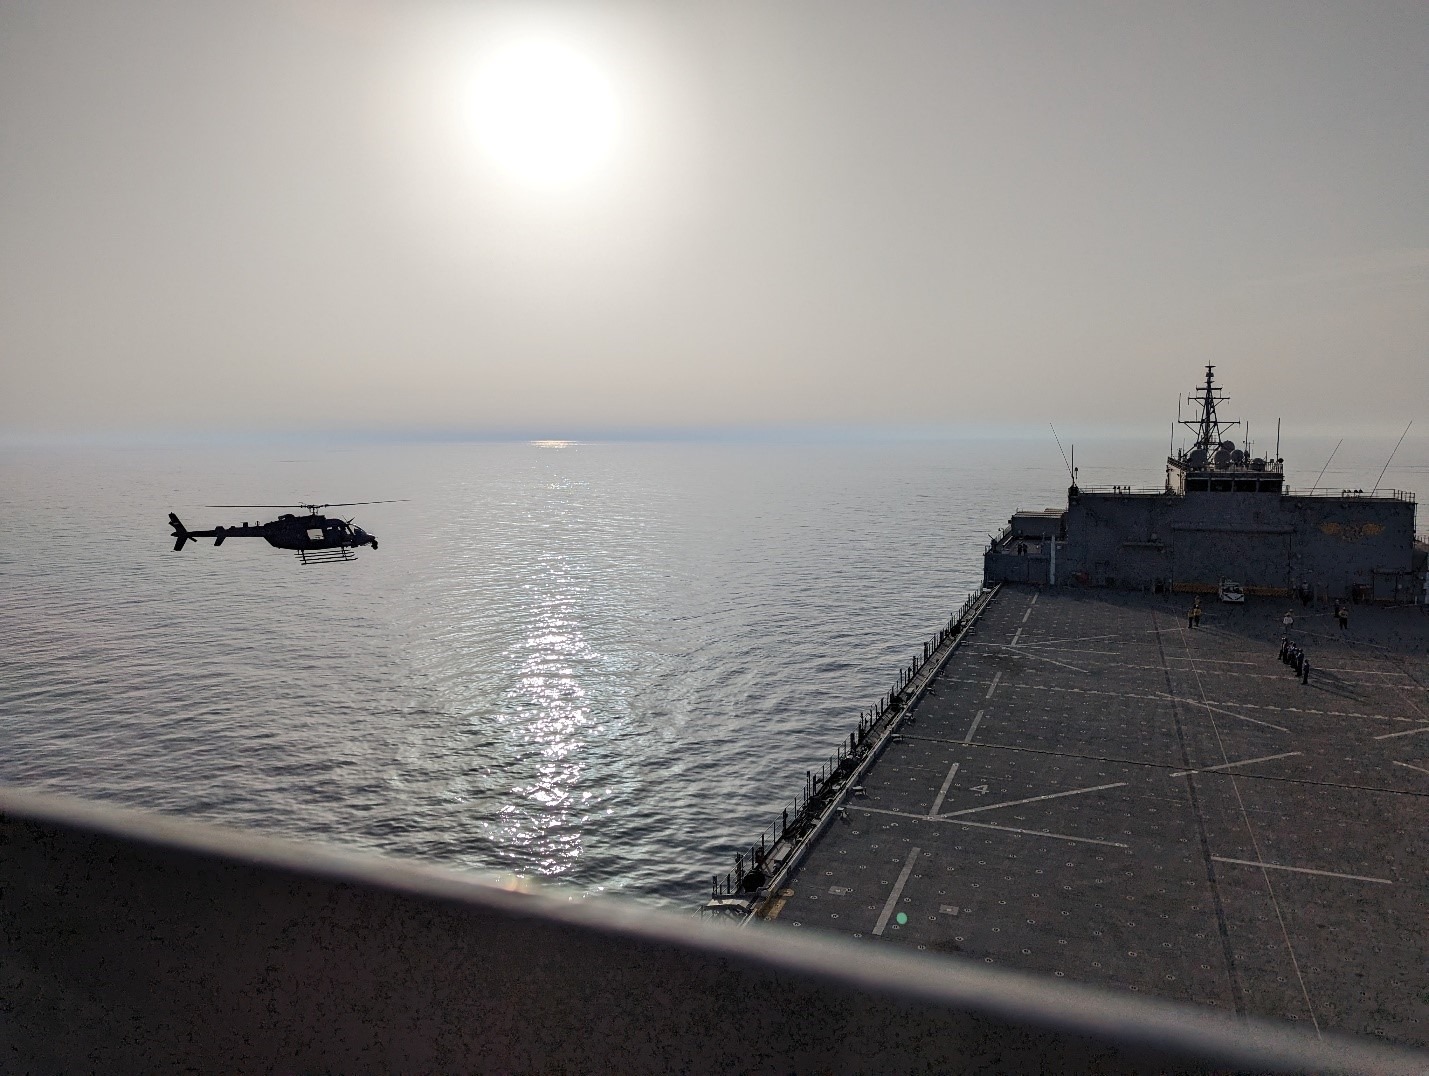 سفينة تابعة للبحرية الأمريكية تدعم تدريب الطيارين الإماراتيين في الخليج العربي